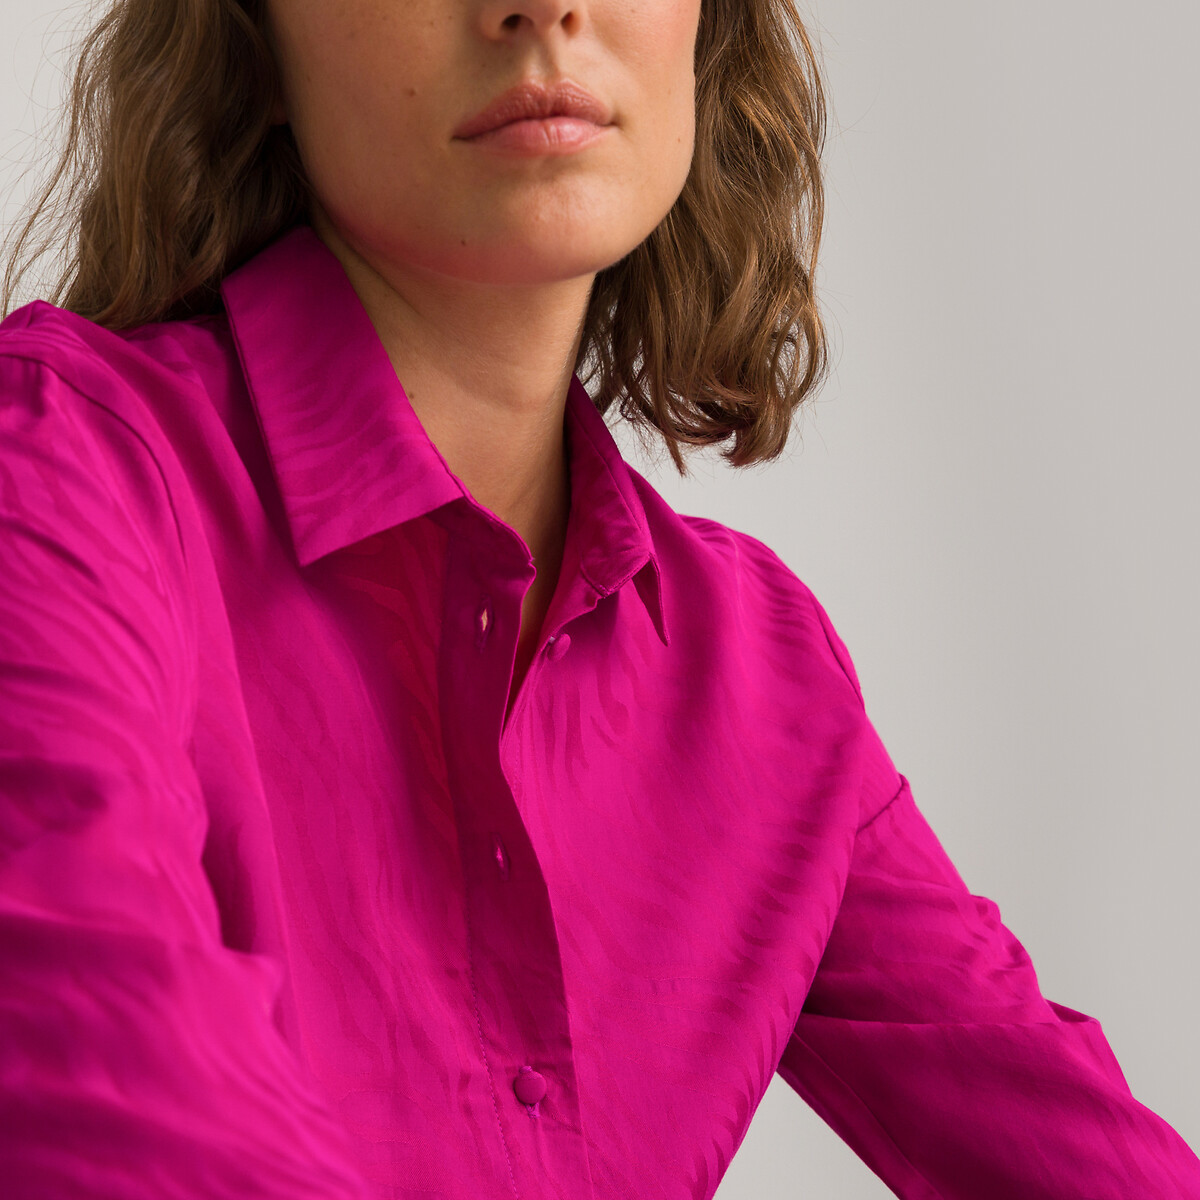 Рубашка Струящаяся с длинными рукавами из жаккарда 48 (FR) - 54 (RUS) розовый LaRedoute, размер 48 (FR) - 54 (RUS) Рубашка Струящаяся с длинными рукавами из жаккарда 48 (FR) - 54 (RUS) розовый - фото 3